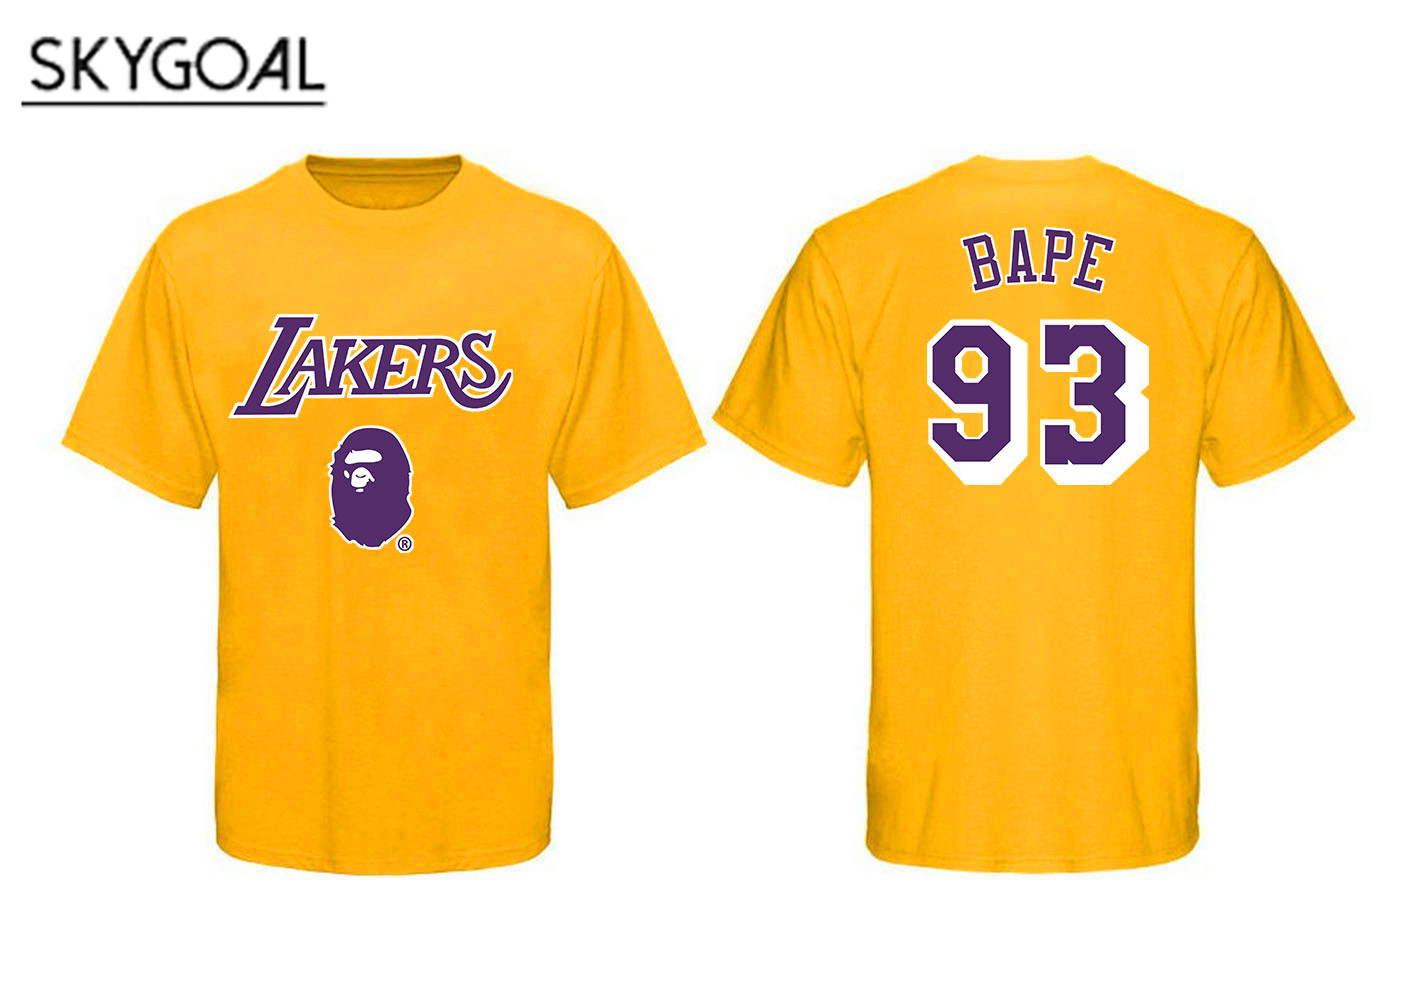 Los Angeles Lakers - Bape